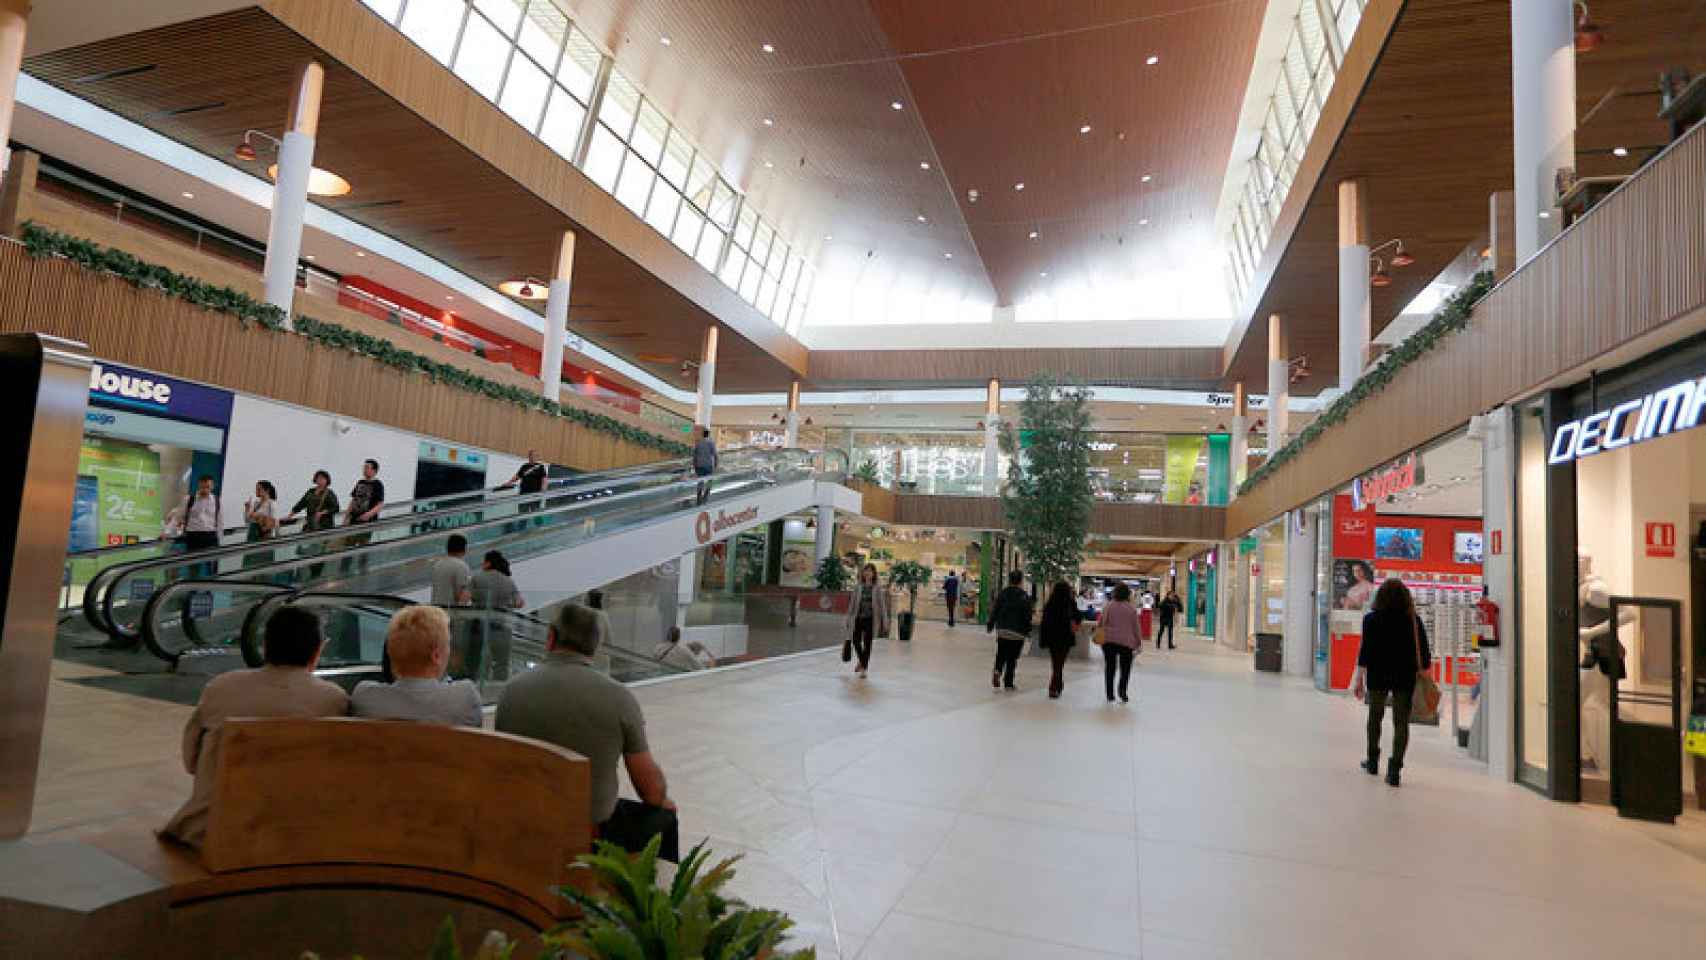 El interior del centro comercial Albacenter. Foto: LAR España.